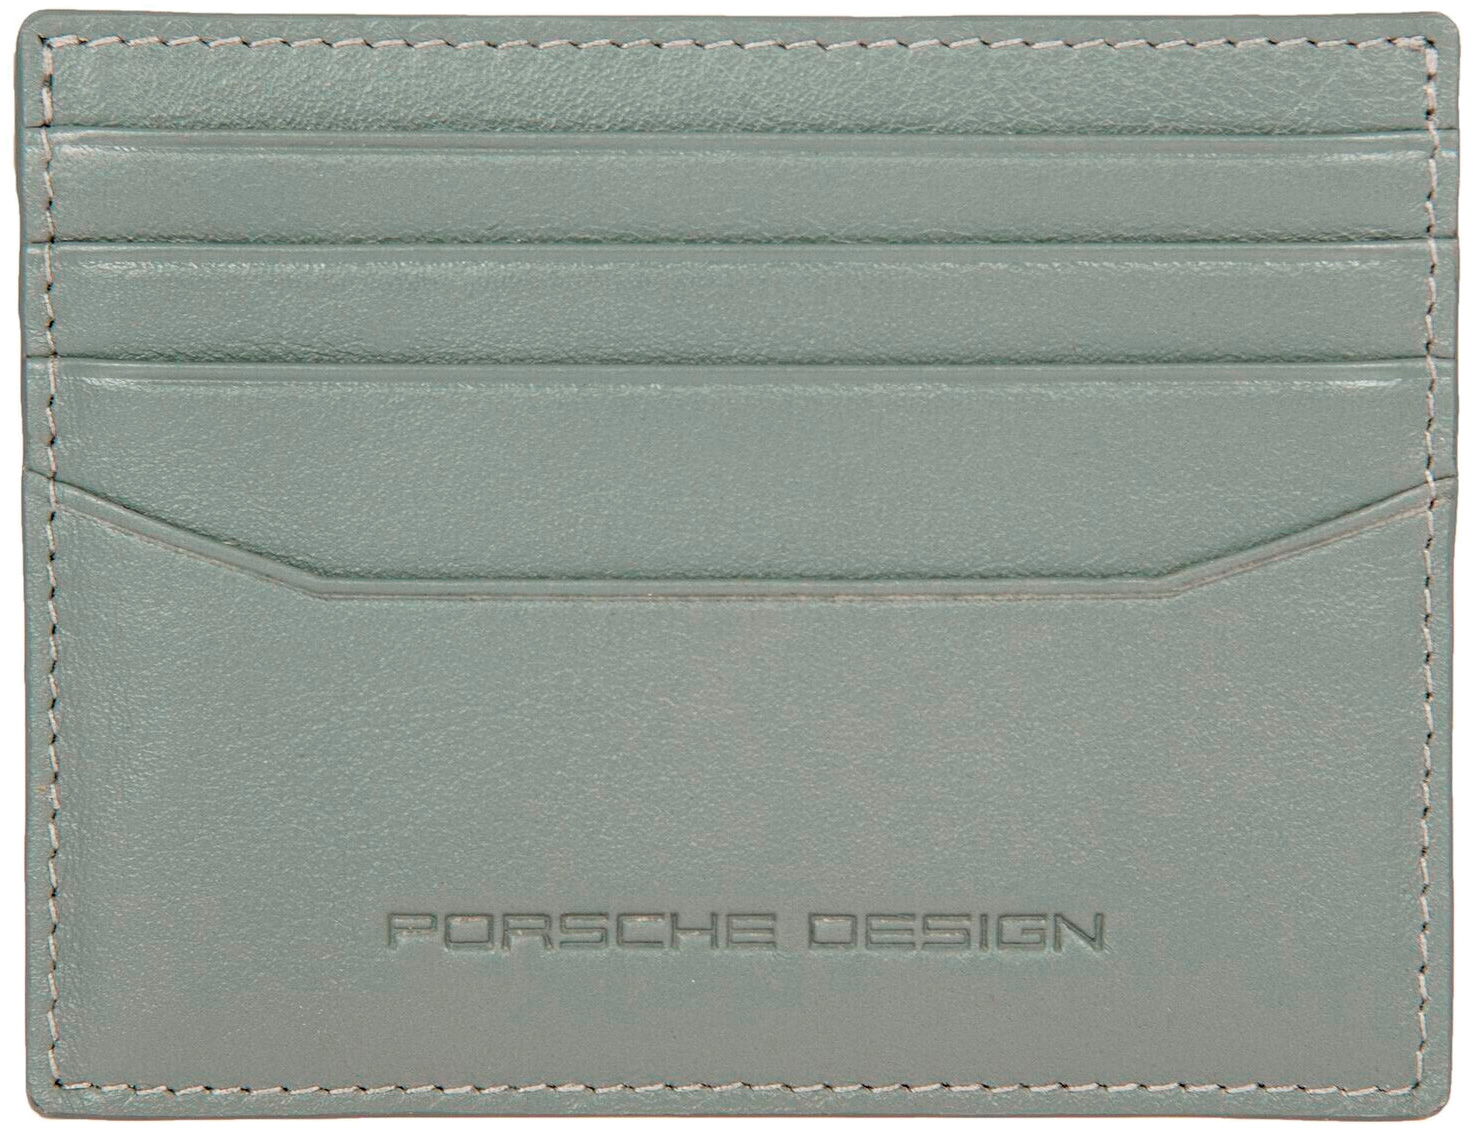   Porsche Design OSO09918.444